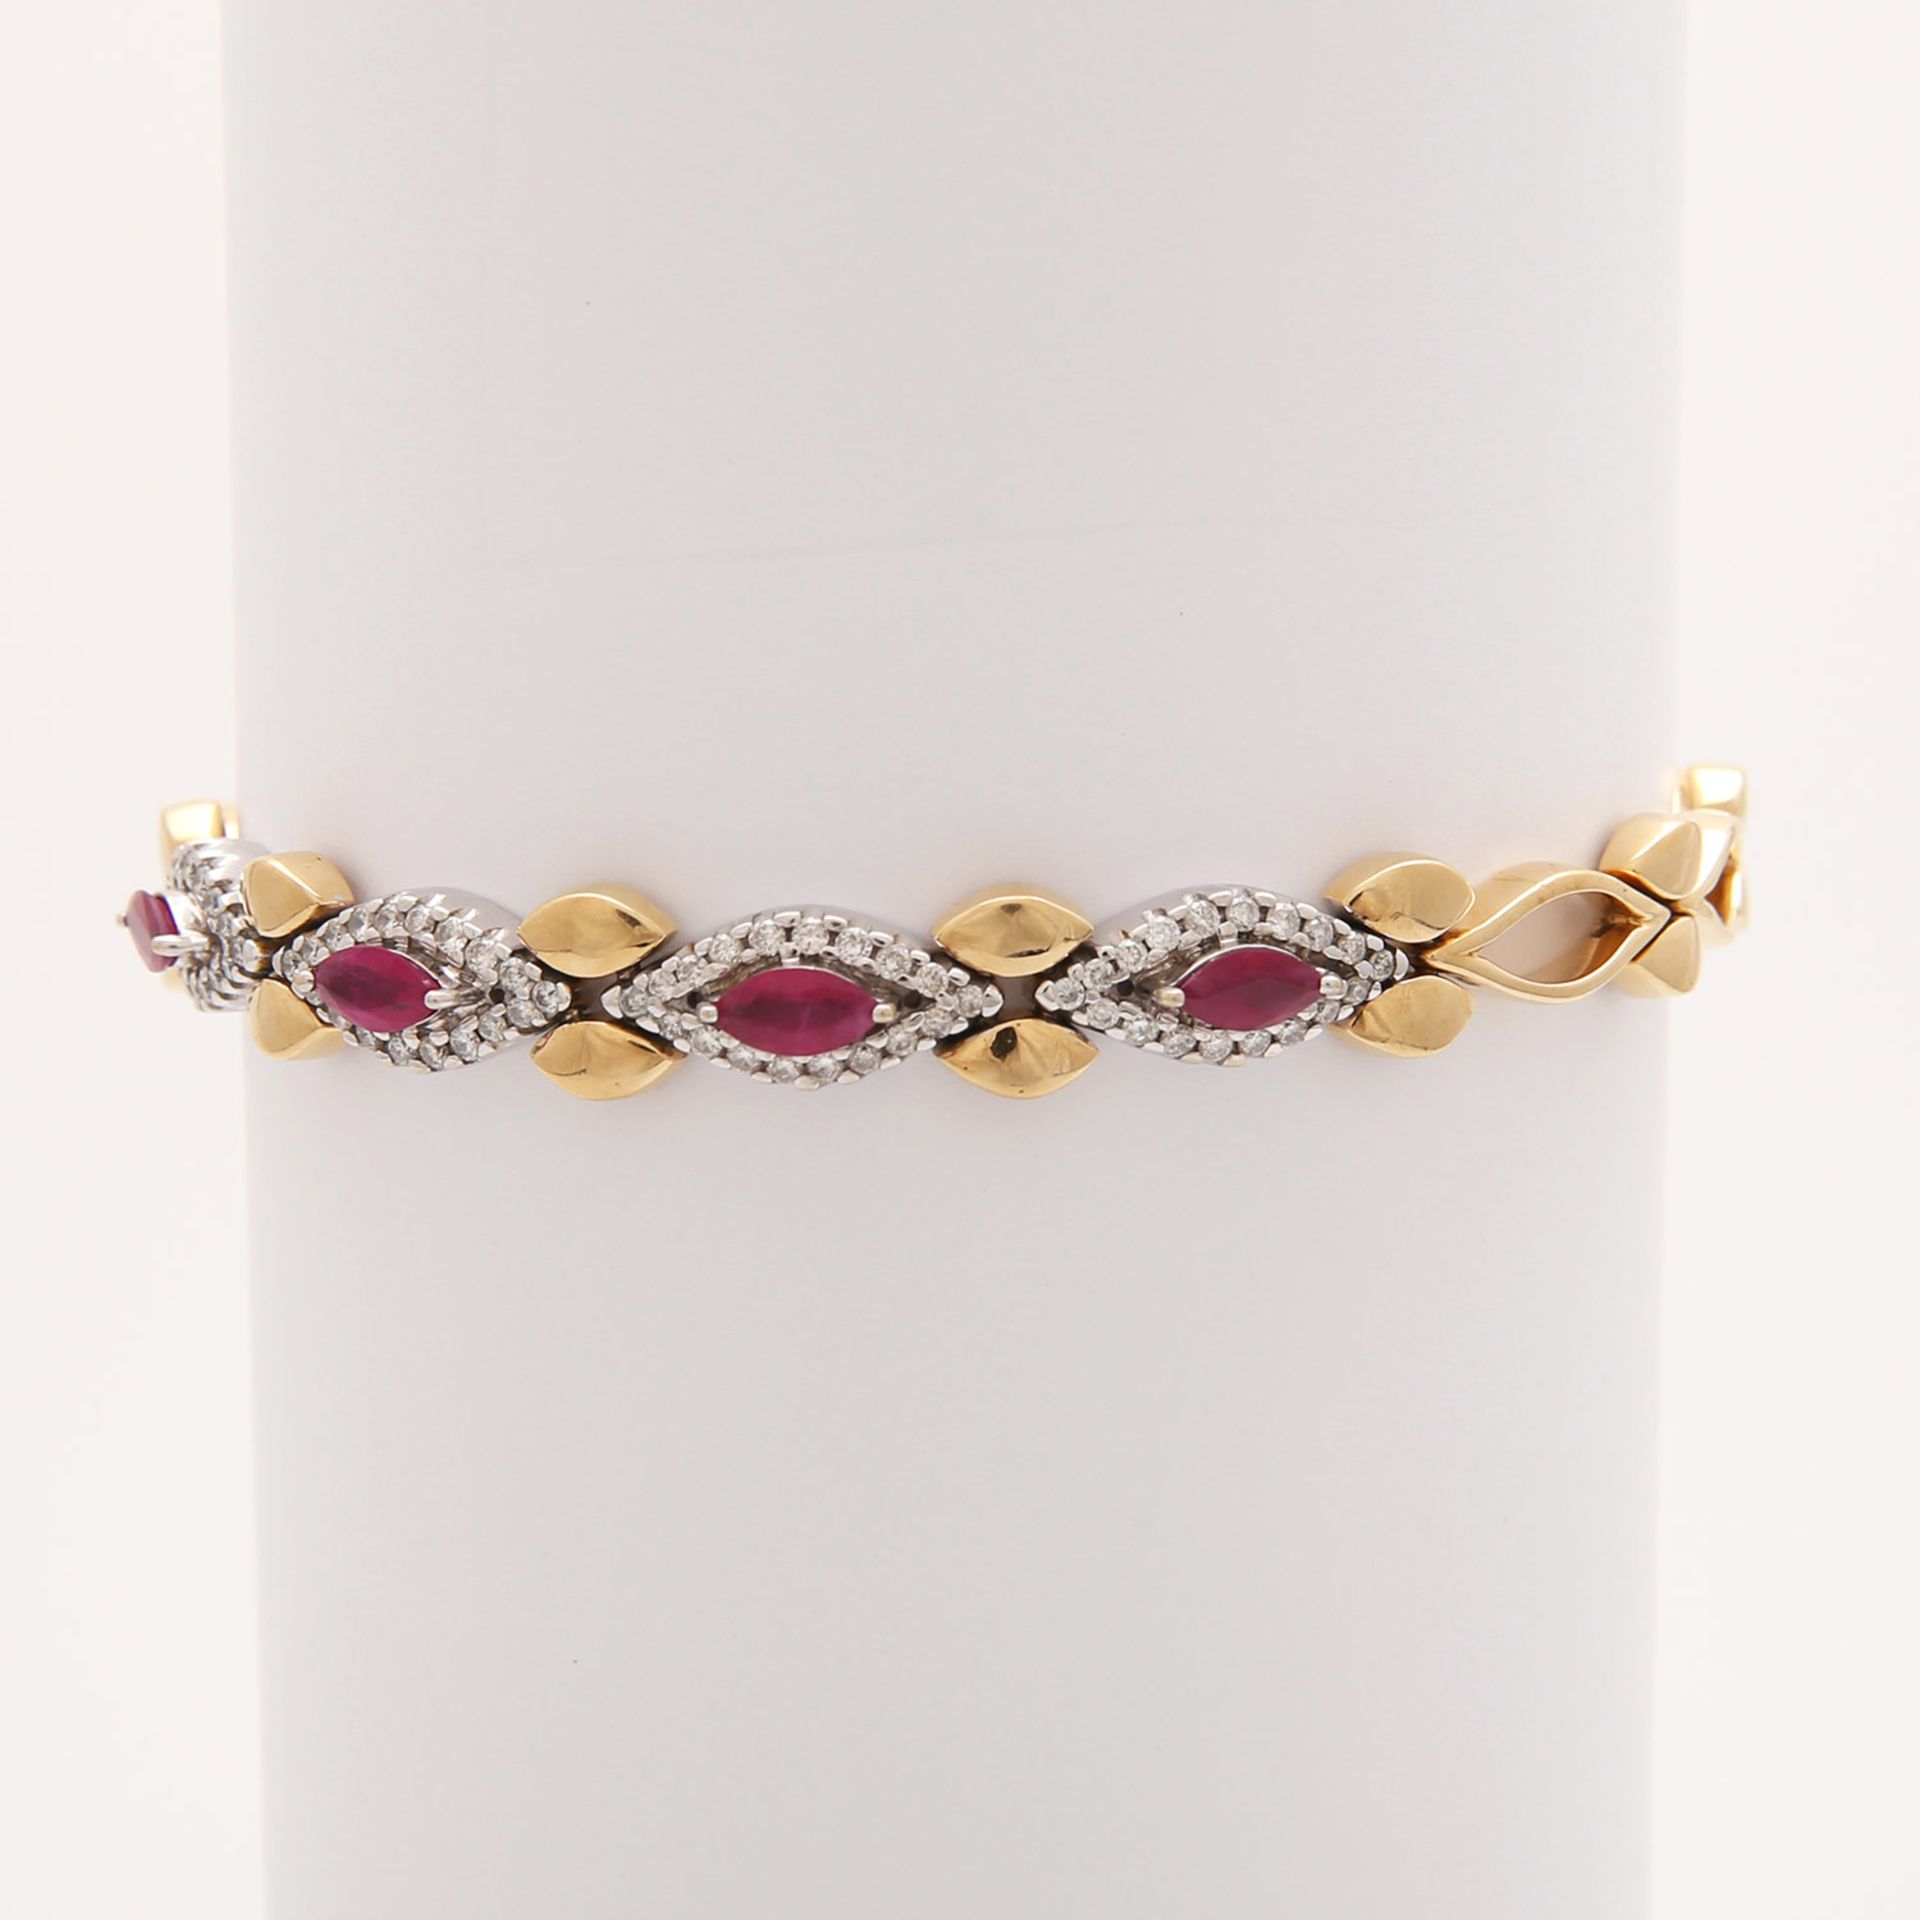 Armband mit Rubinen und Diamanten, Rubine von zus ca. 1,22 ct., Diamanten von zus. ca. 0.62 ct., 18K